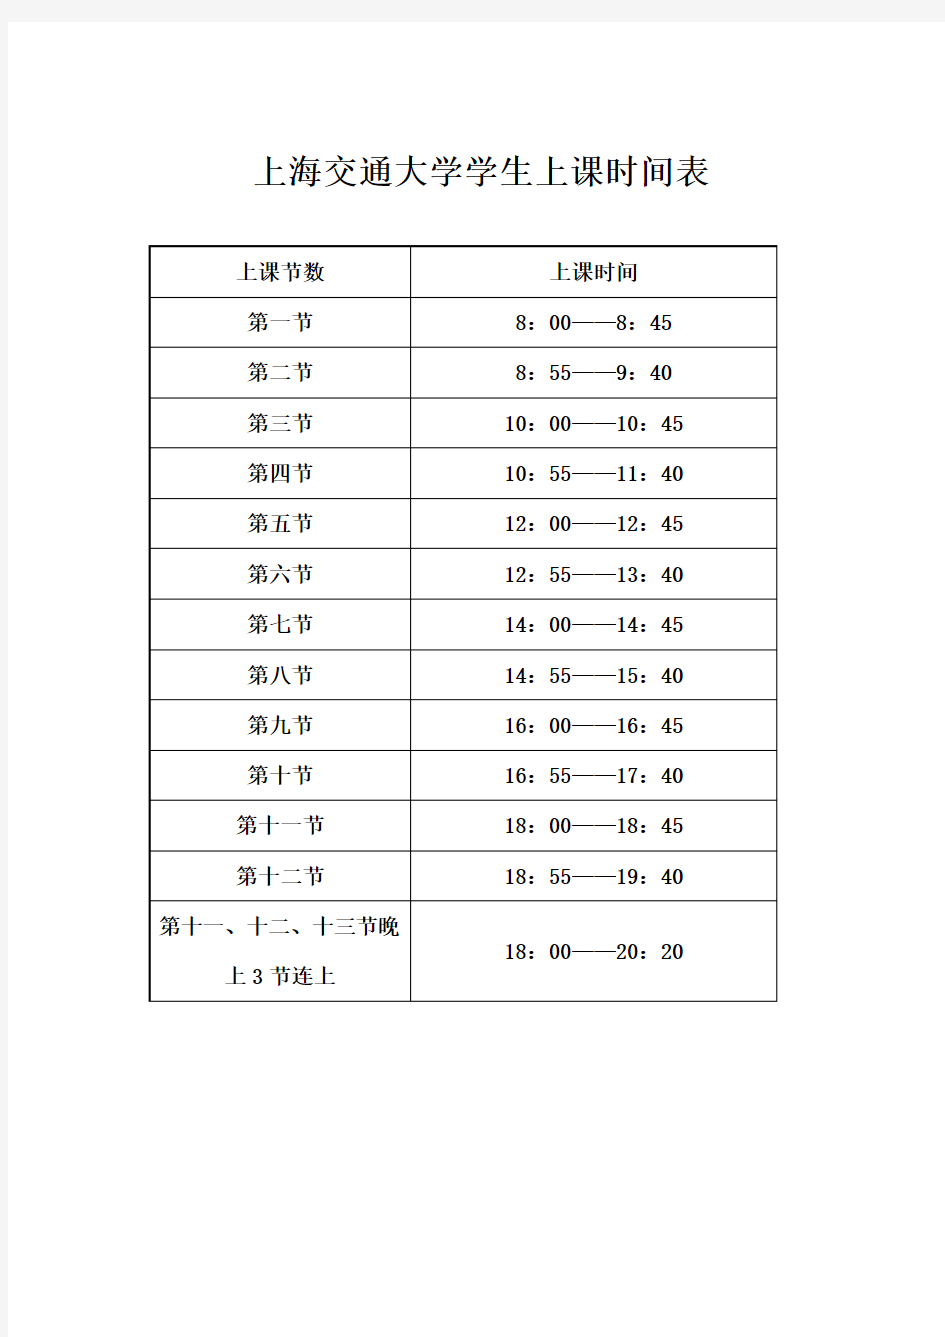 上海交通大学学生上课时间表